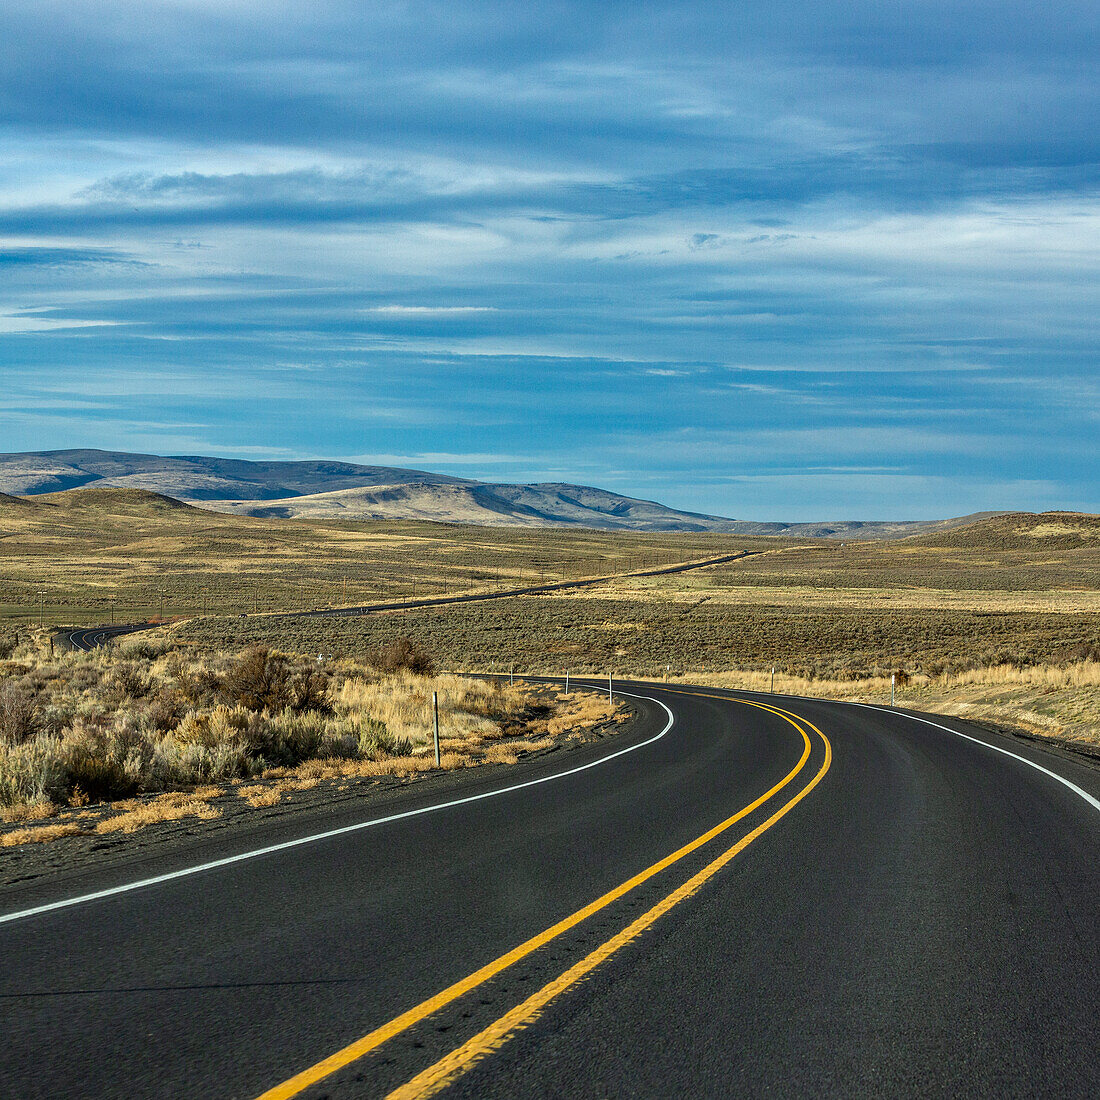 United States, Nevada, Winnemucca, Empty highway in desert